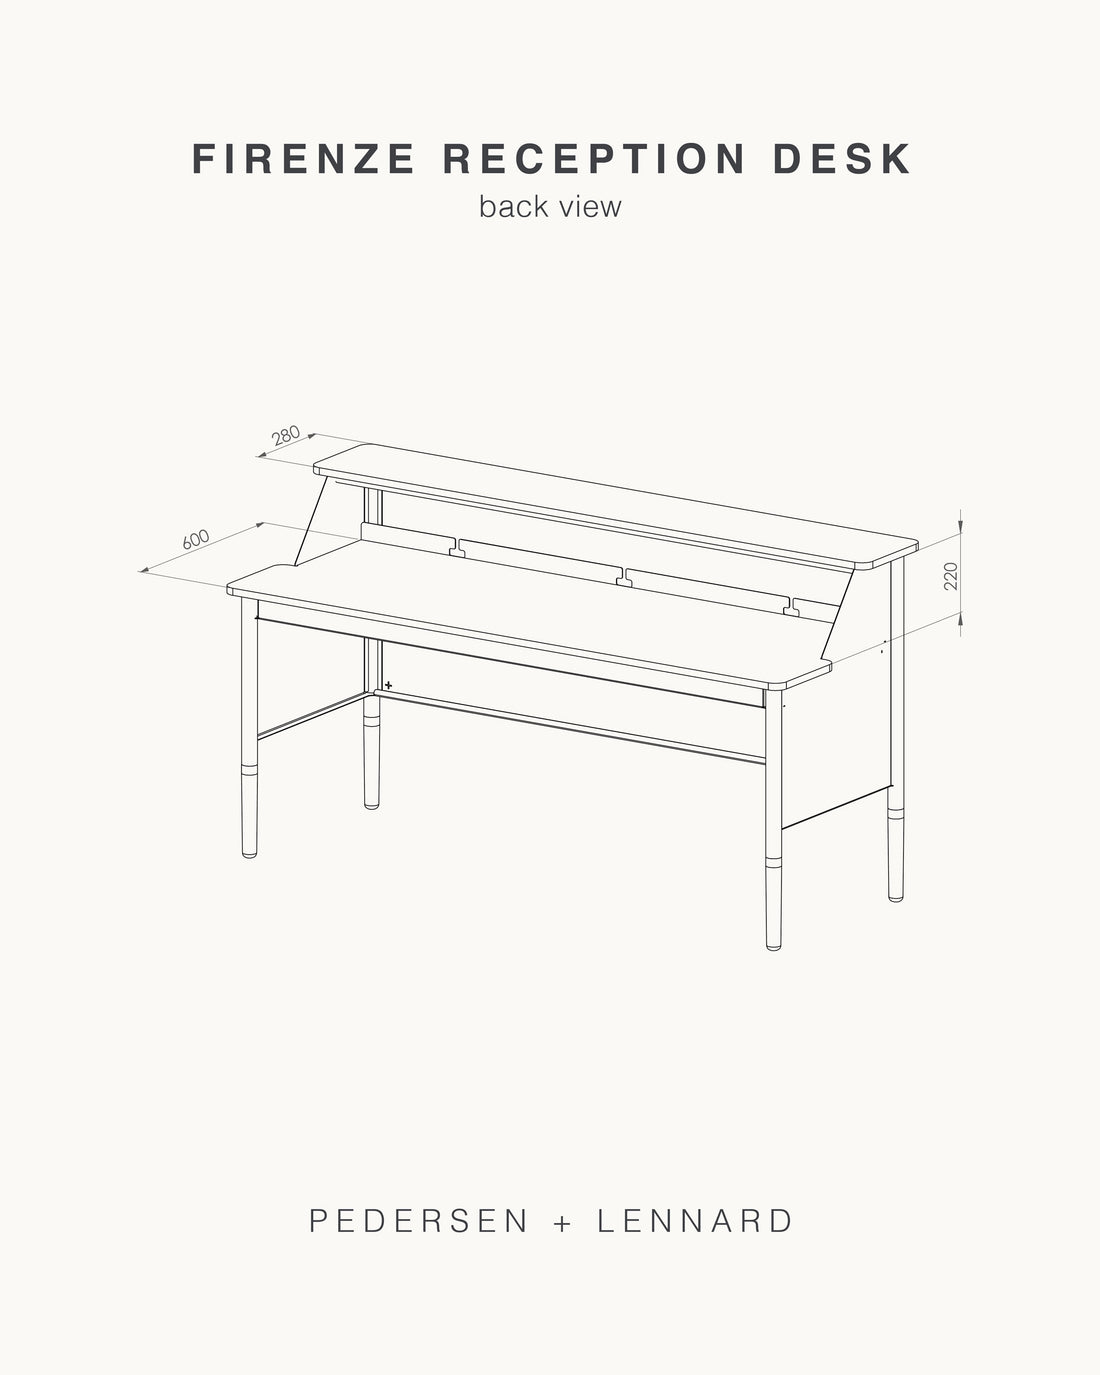 Firenze Reception Desk